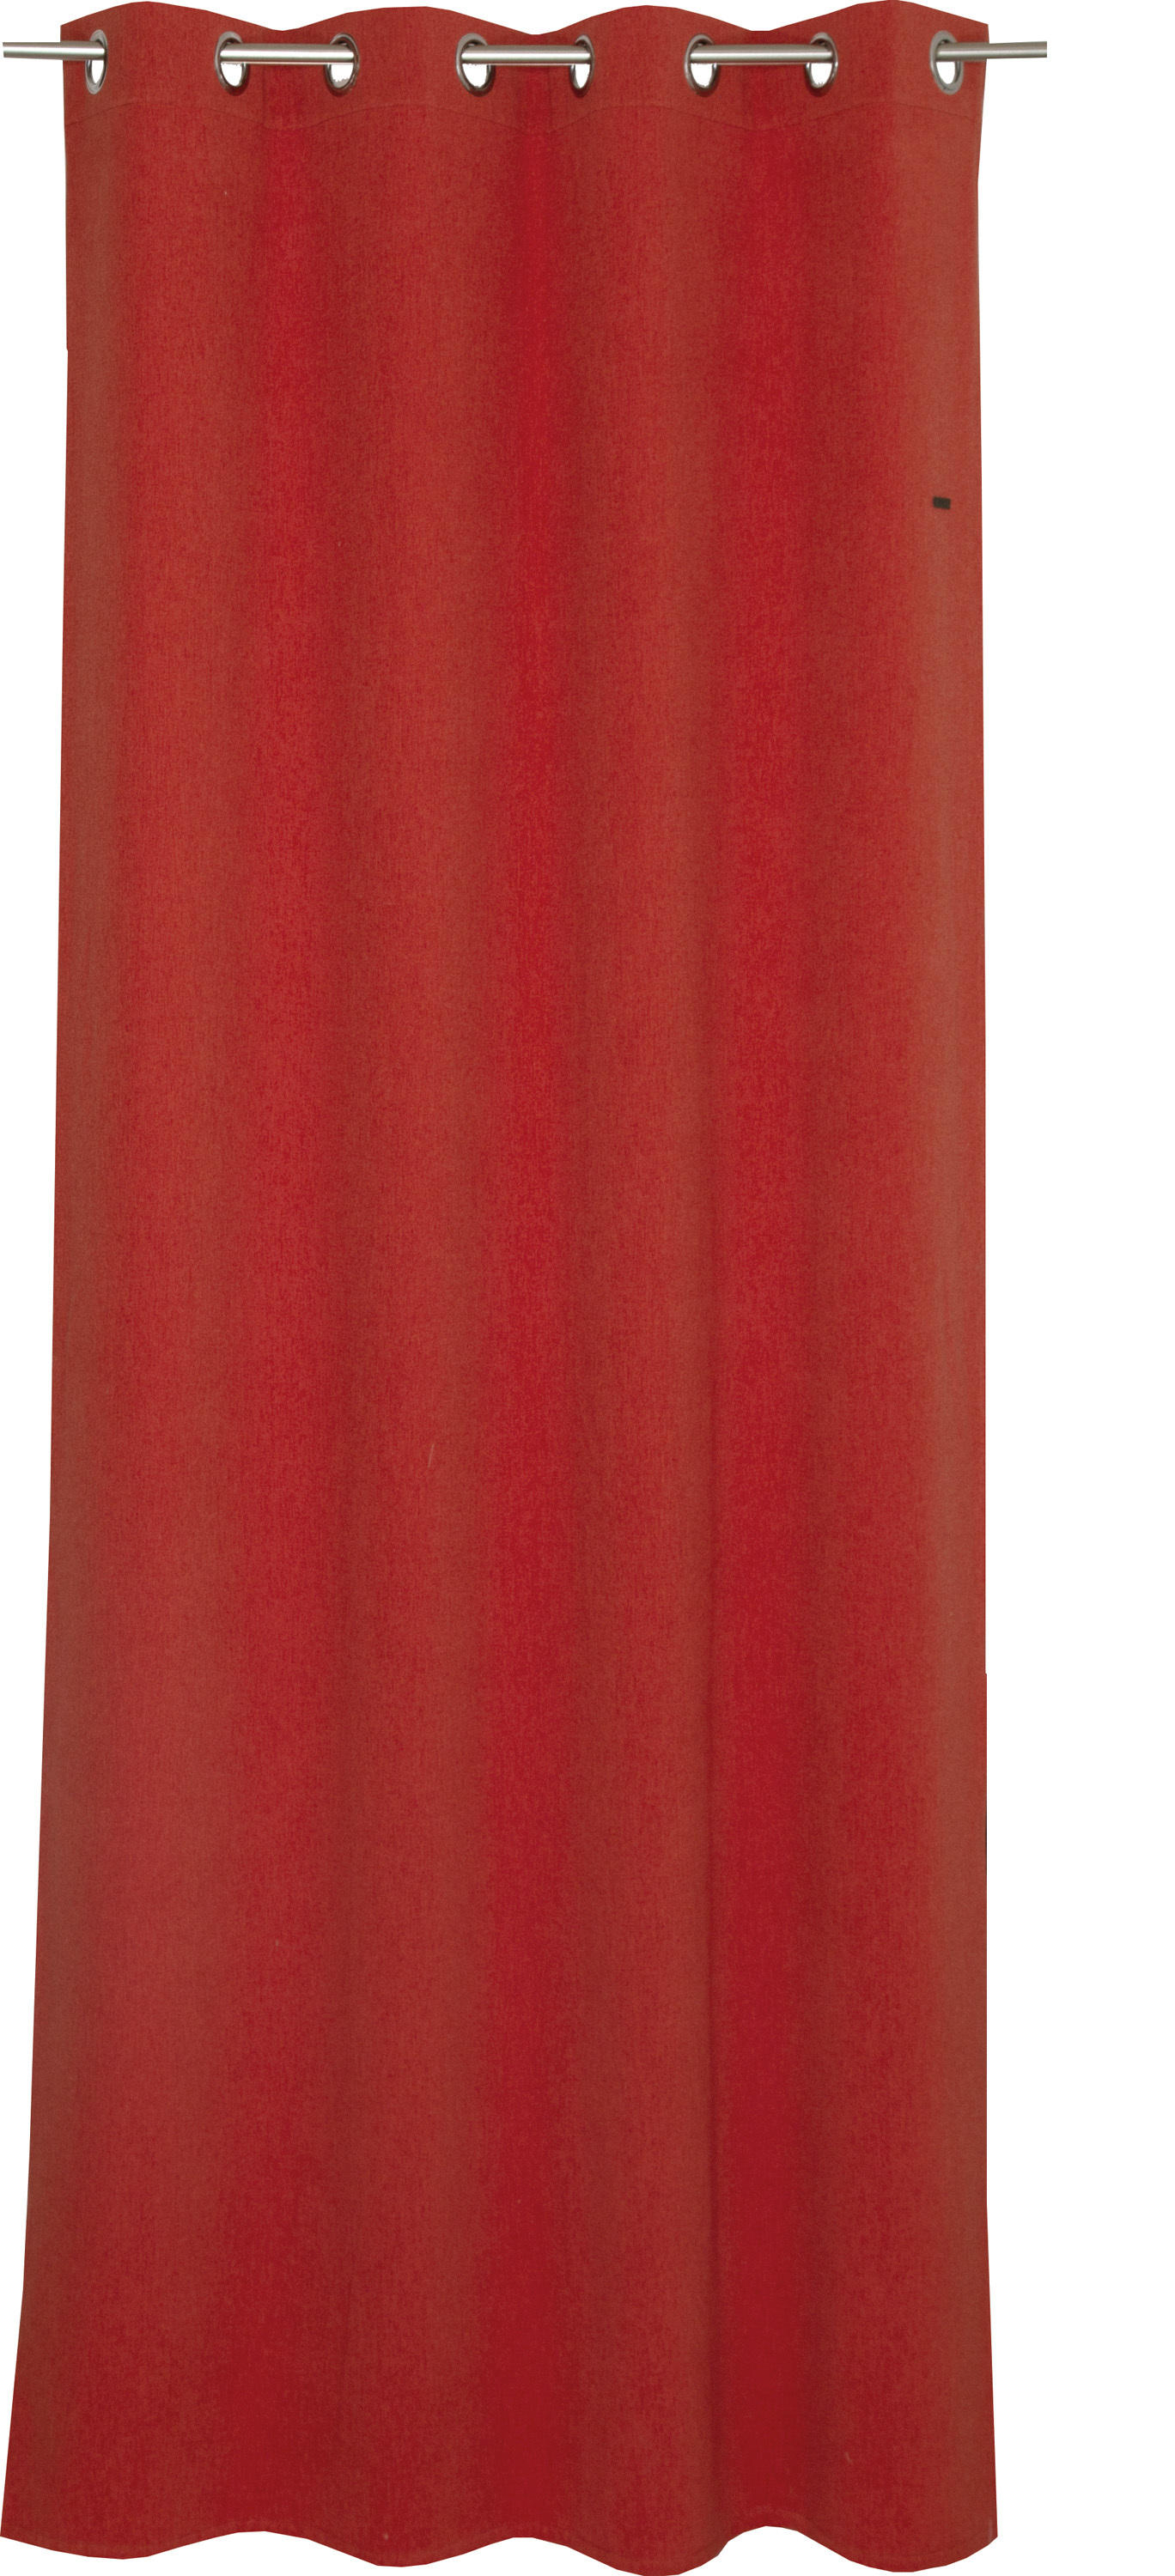 ÖSENSCHAL E-Harp blickdicht 140/250 cm   - Hellrot/Rostfarben, Basics, Textil (140/250cm) - Esprit